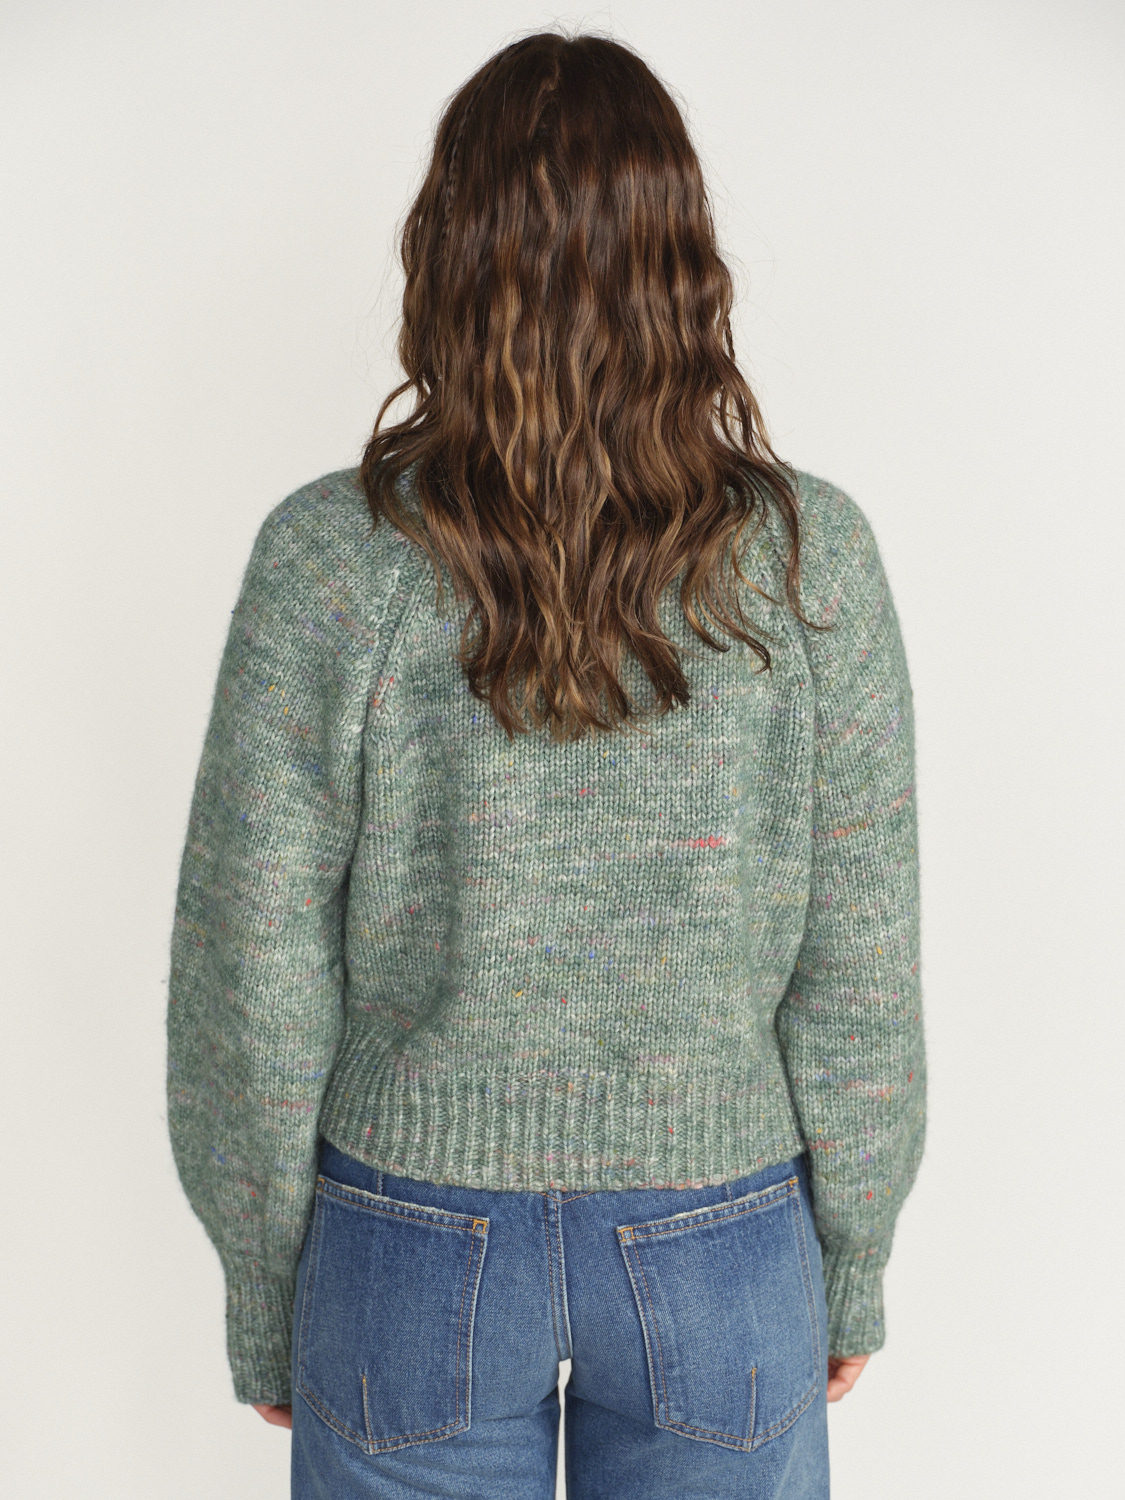 Antonia Zander Clodina – Oversized Strickjacke aus Baumwolle und Merino Wolle grün XS